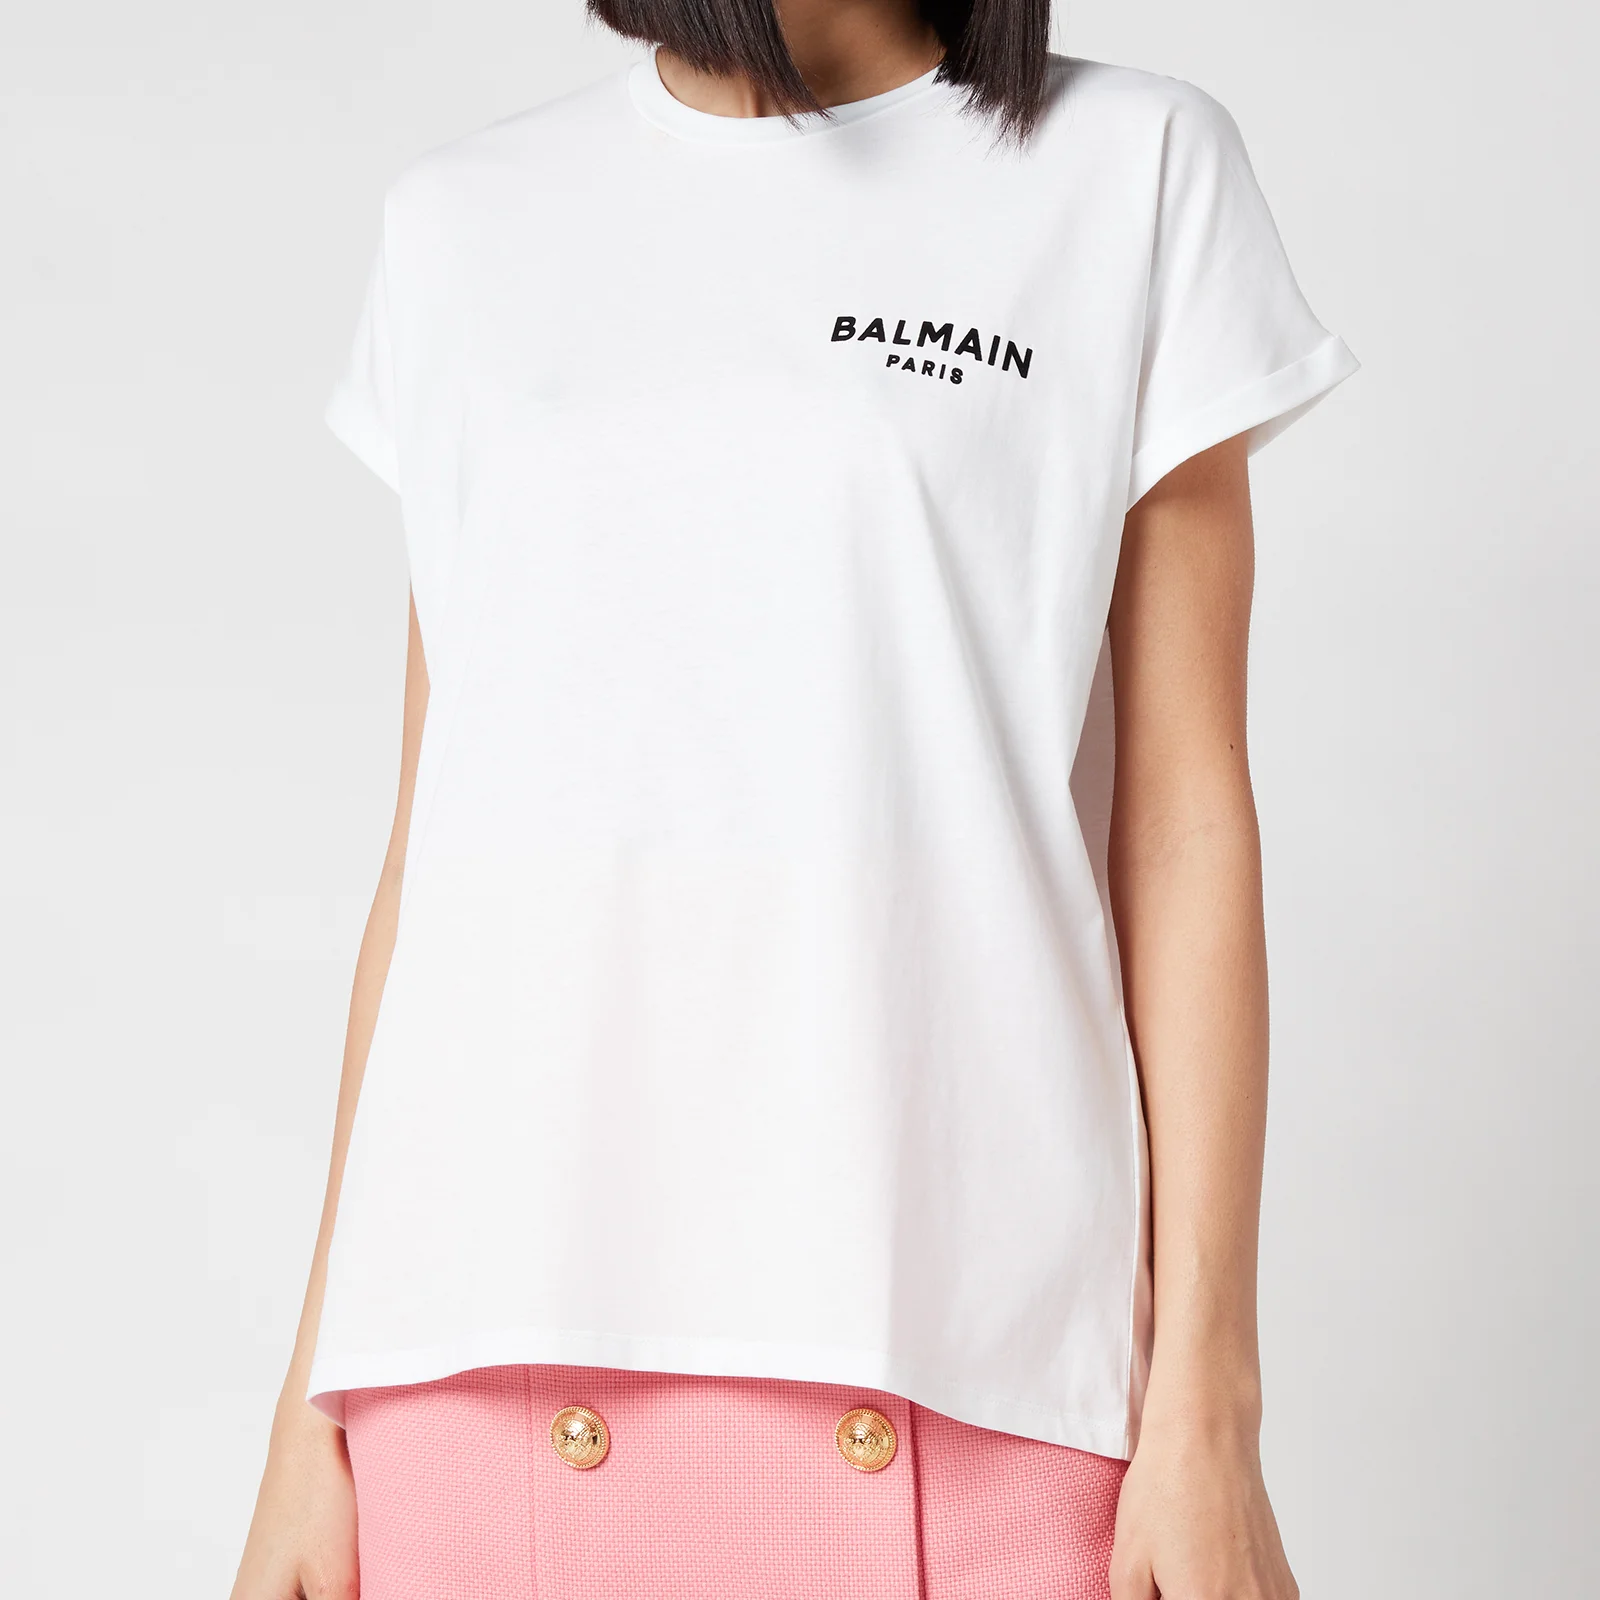 Balmain Women's Flocked Logo Detail T-Shirt - Blanc/Noir Image 1